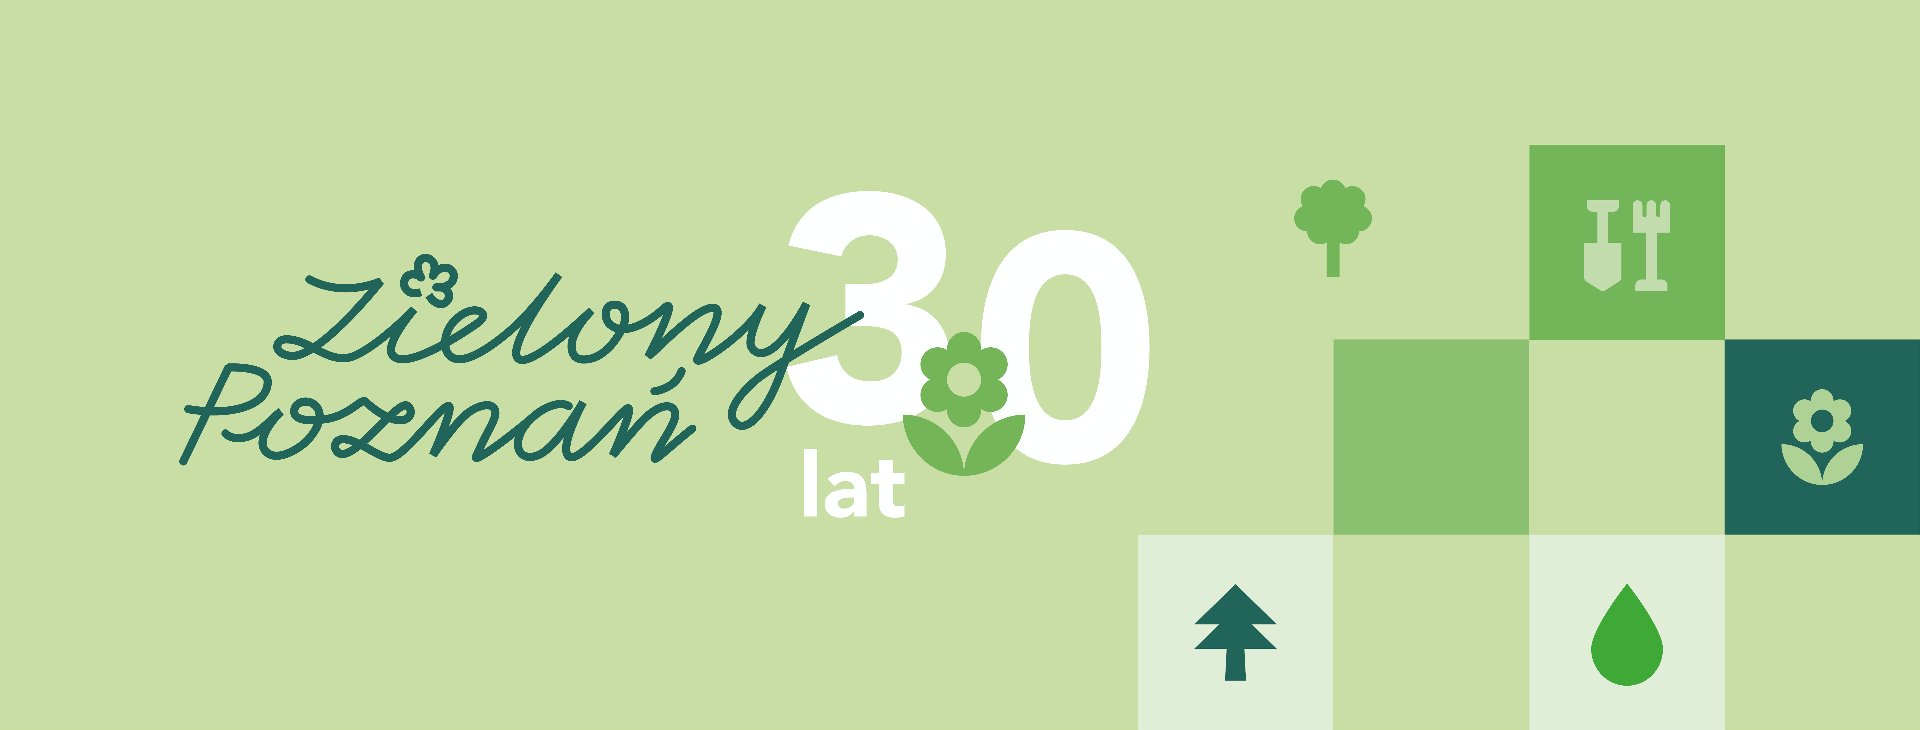 Zielona grafika z napisem "zielony Poznań 30 lat" oraz elementami graficznymi - grafika artykułu